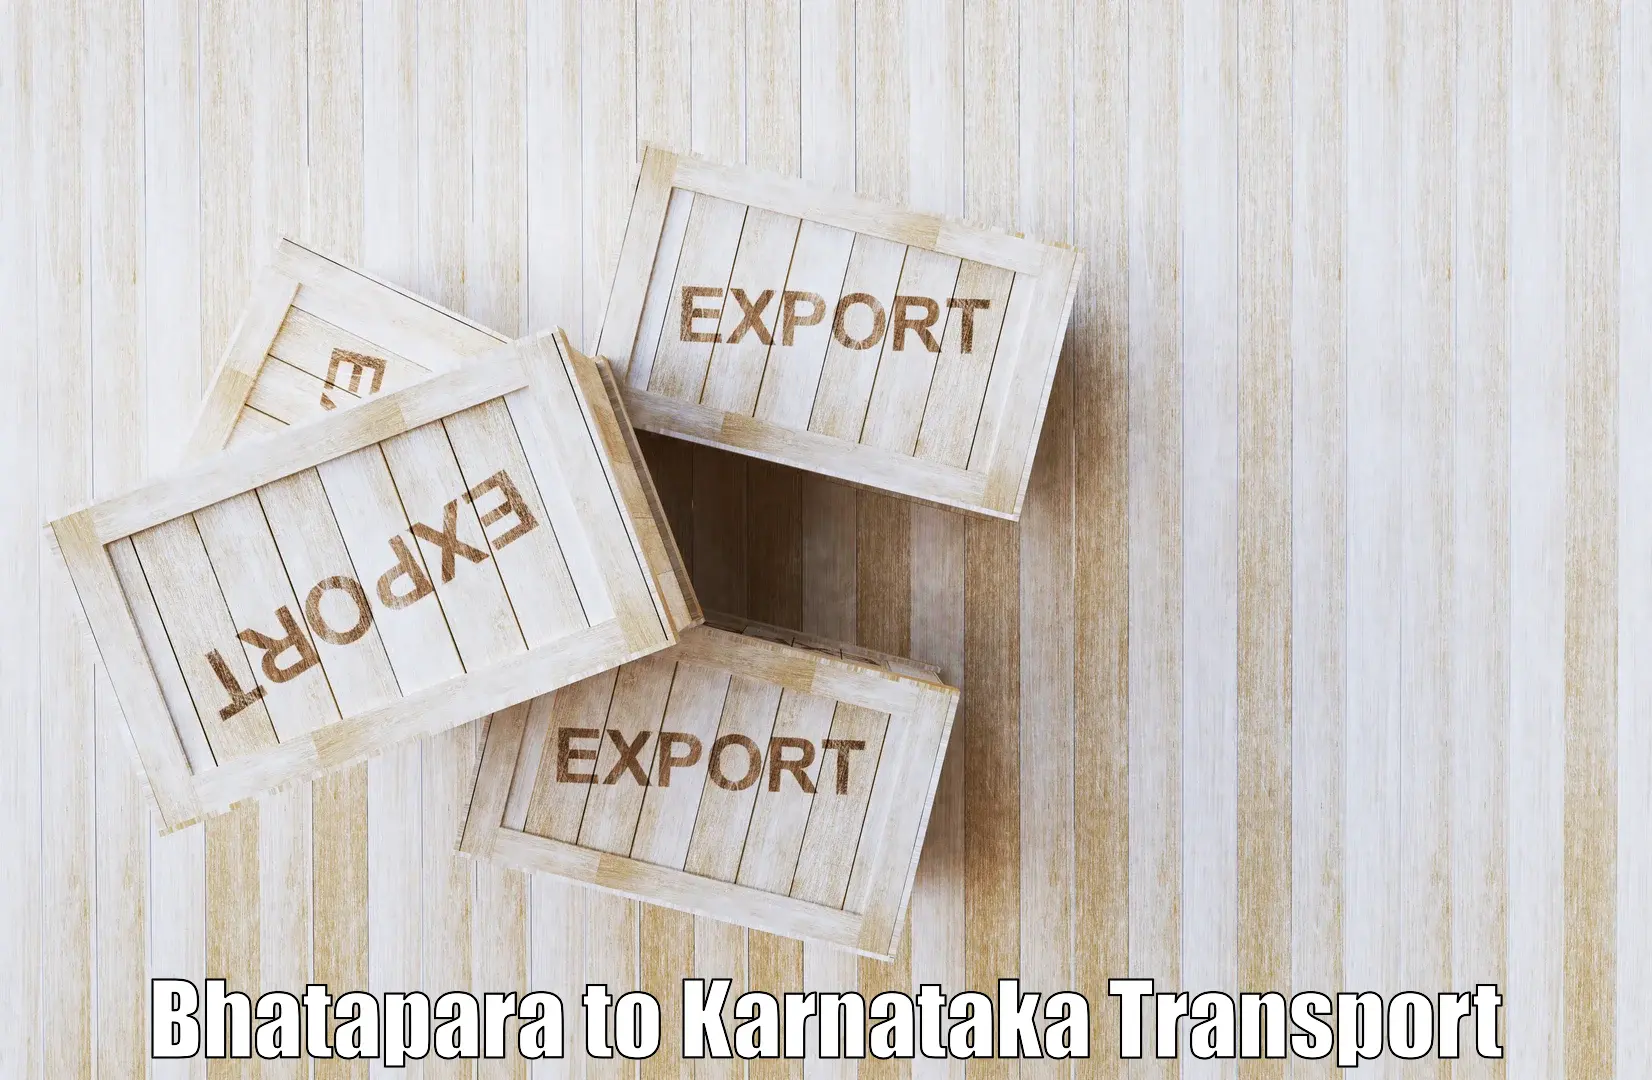 India truck logistics services Bhatapara to Nelamangala